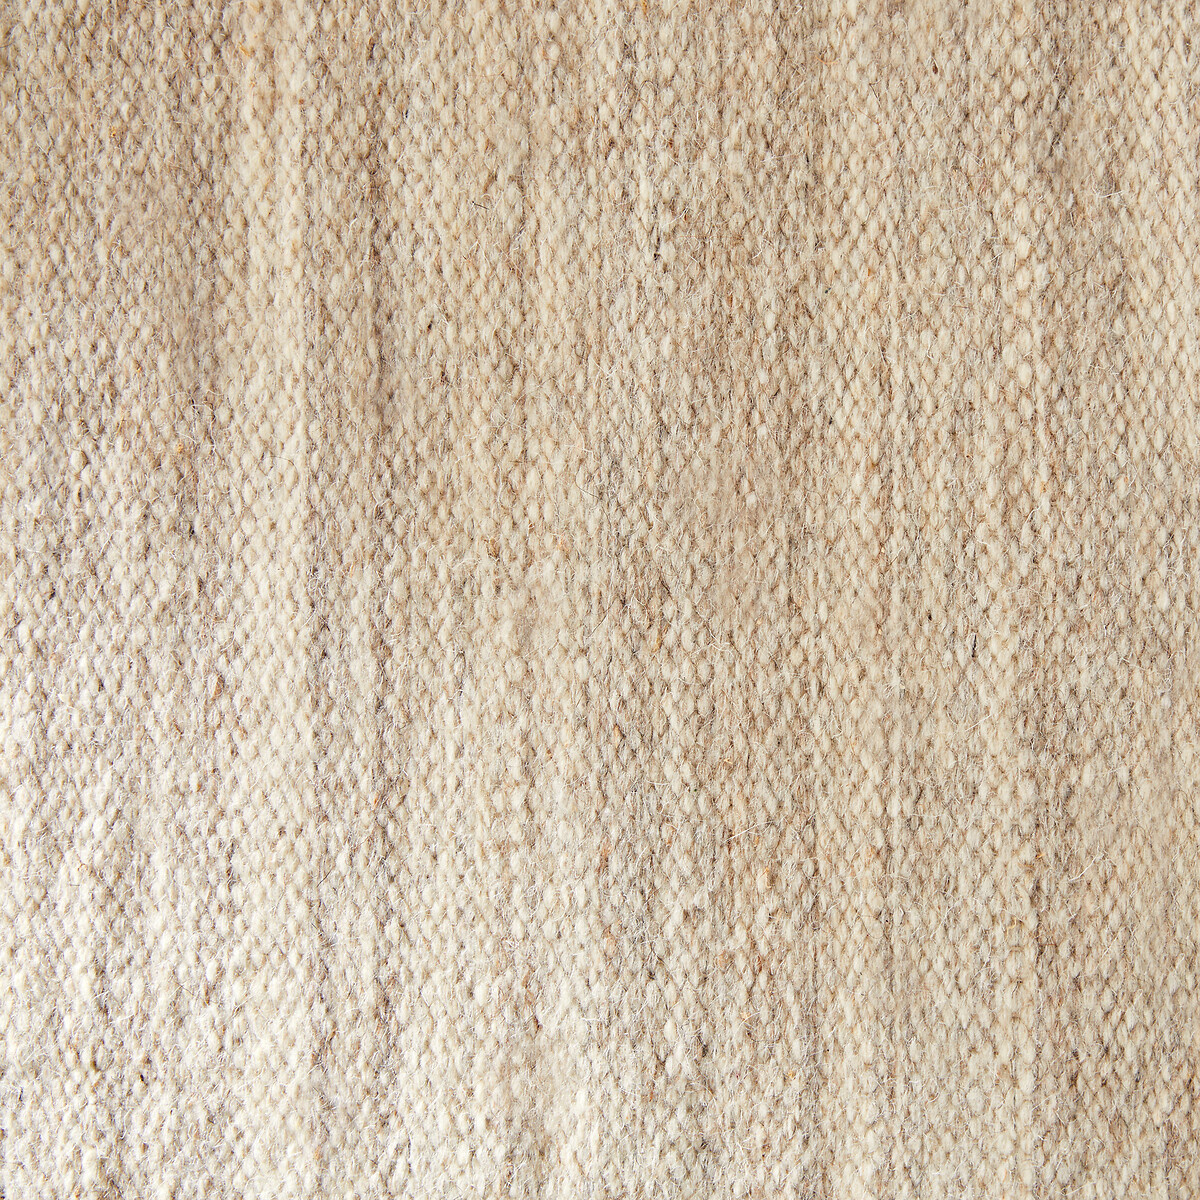 Ковер Из шерсти сотканный вручную Arjun 160 x 230 см бежевый LaRedoute, размер 160 x 230 см - фото 5